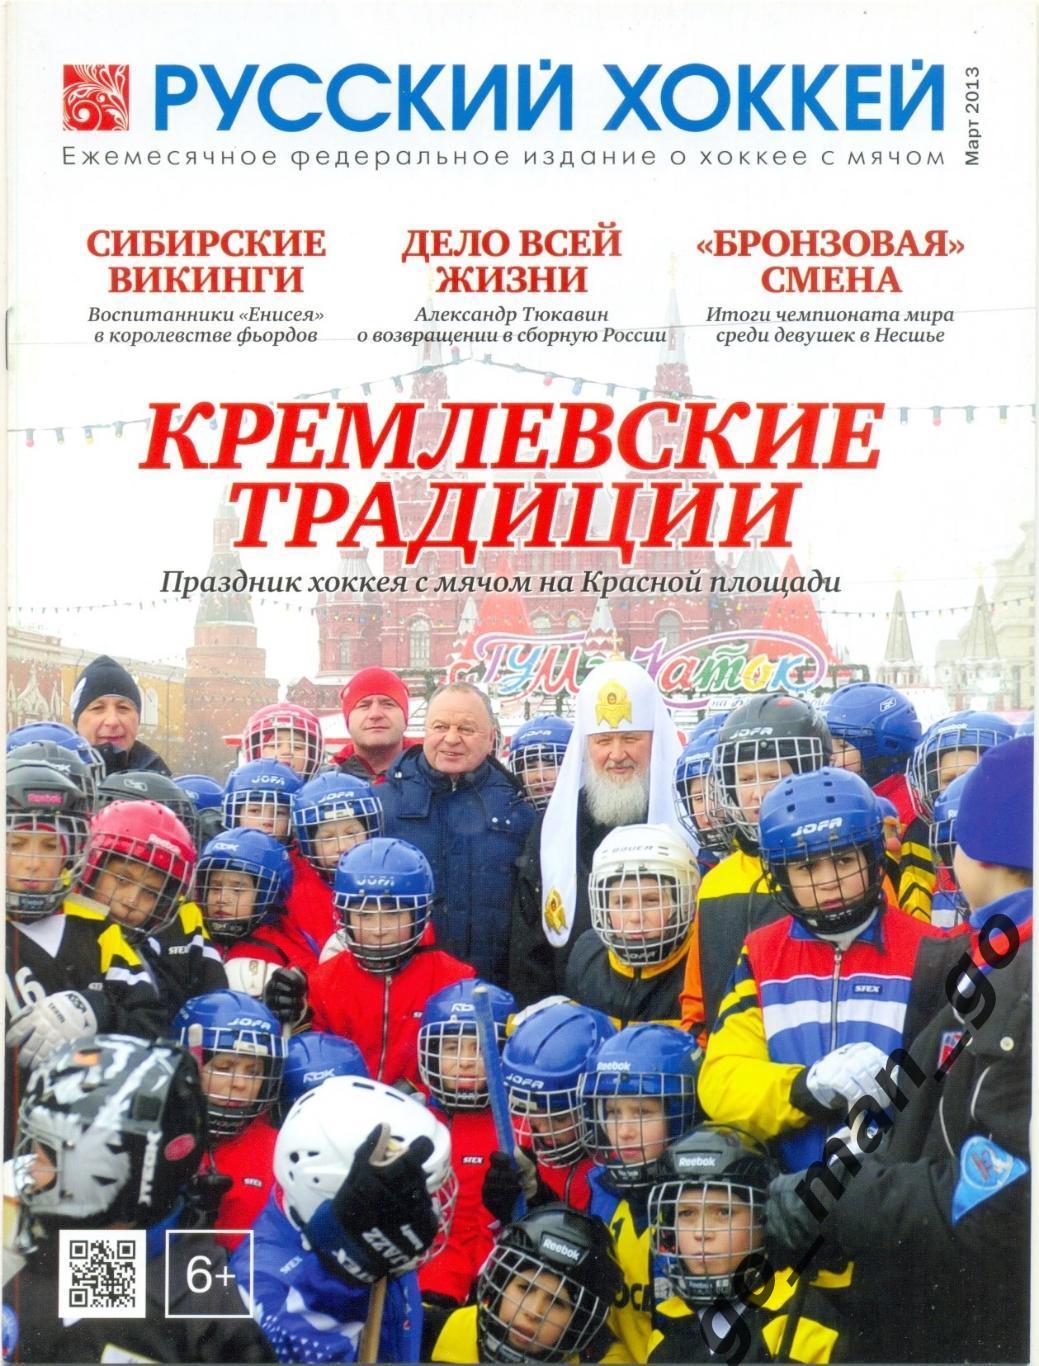 Журнал РУССКИЙ ХОККЕЙ, март 2013.